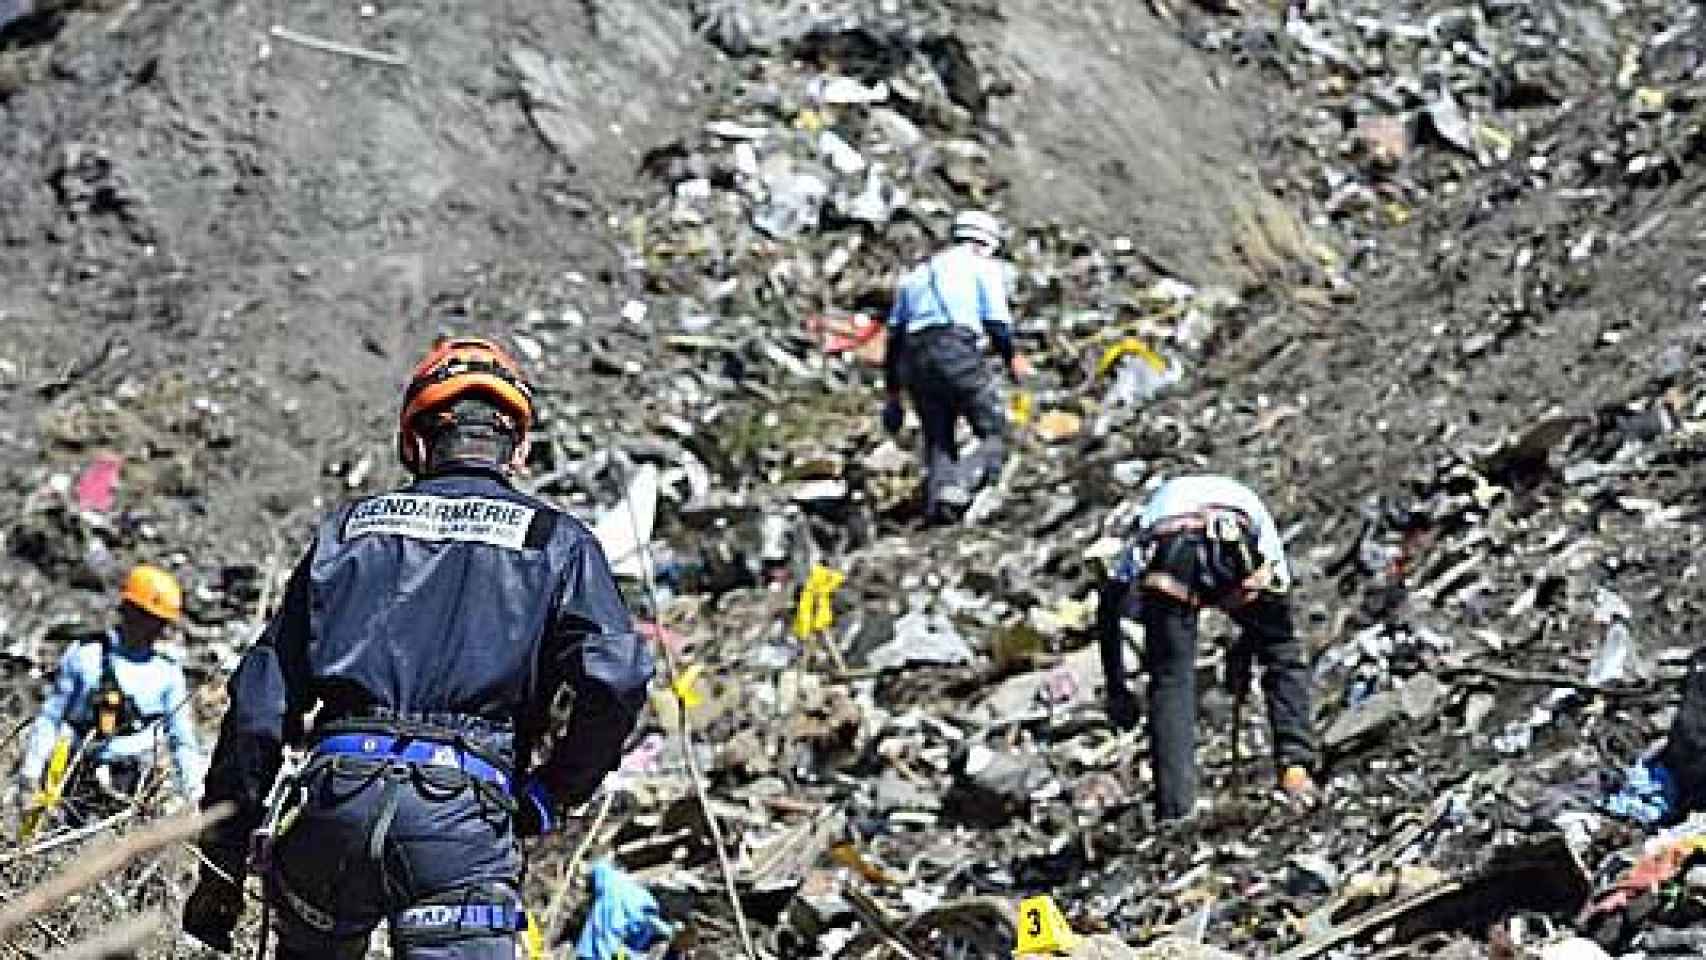 Lugar del accidente del avión de Germanwings en los Alpes con 150 víctimas